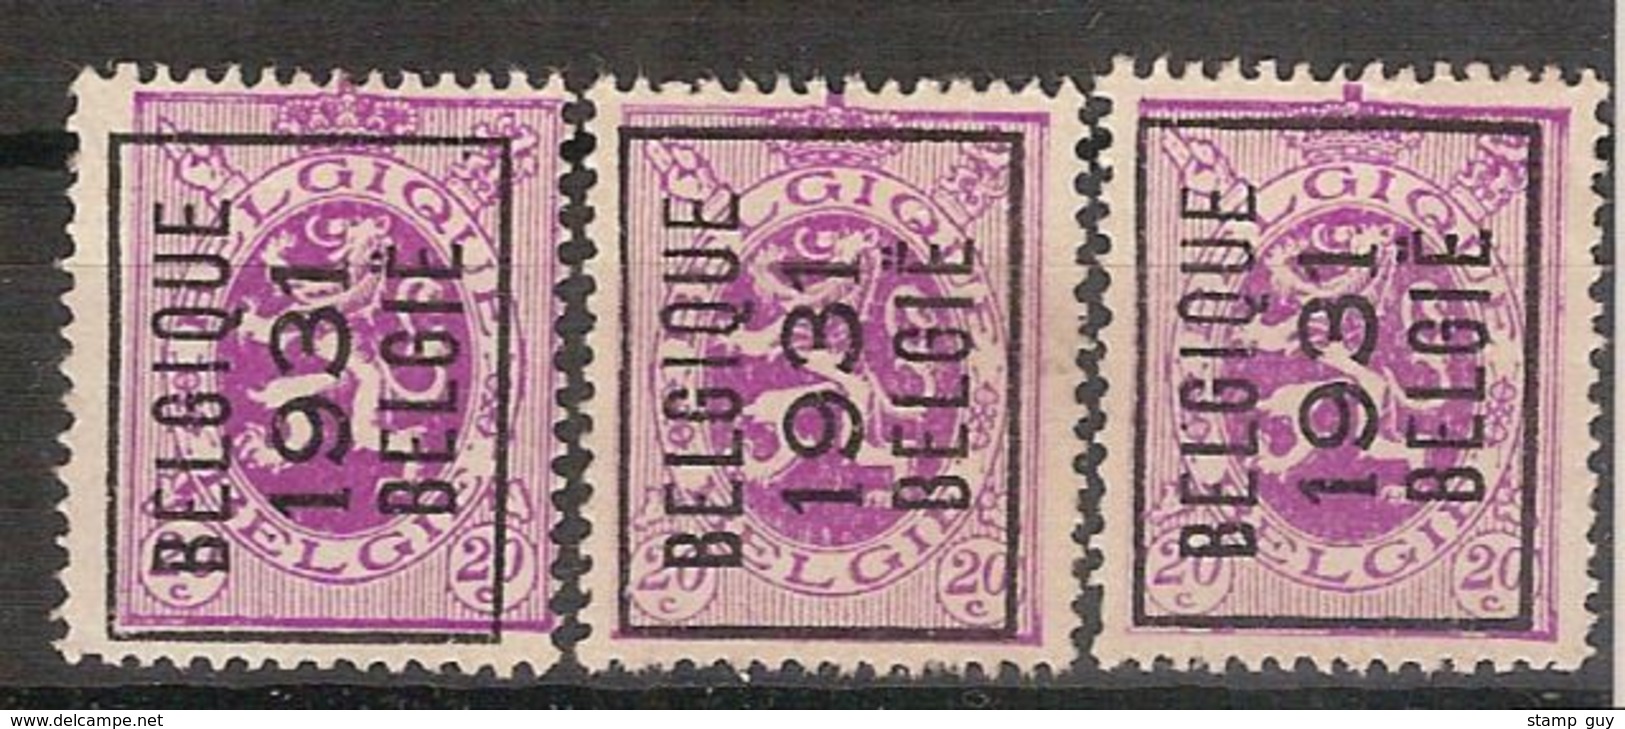 BELGIË - PREO - 1931 - Nr.  249 A (3x) - BELGIQUE 1931 BELGIË - (*) ! Inzet 5 &euro; ! - Typos 1929-37 (Lion Héraldique)